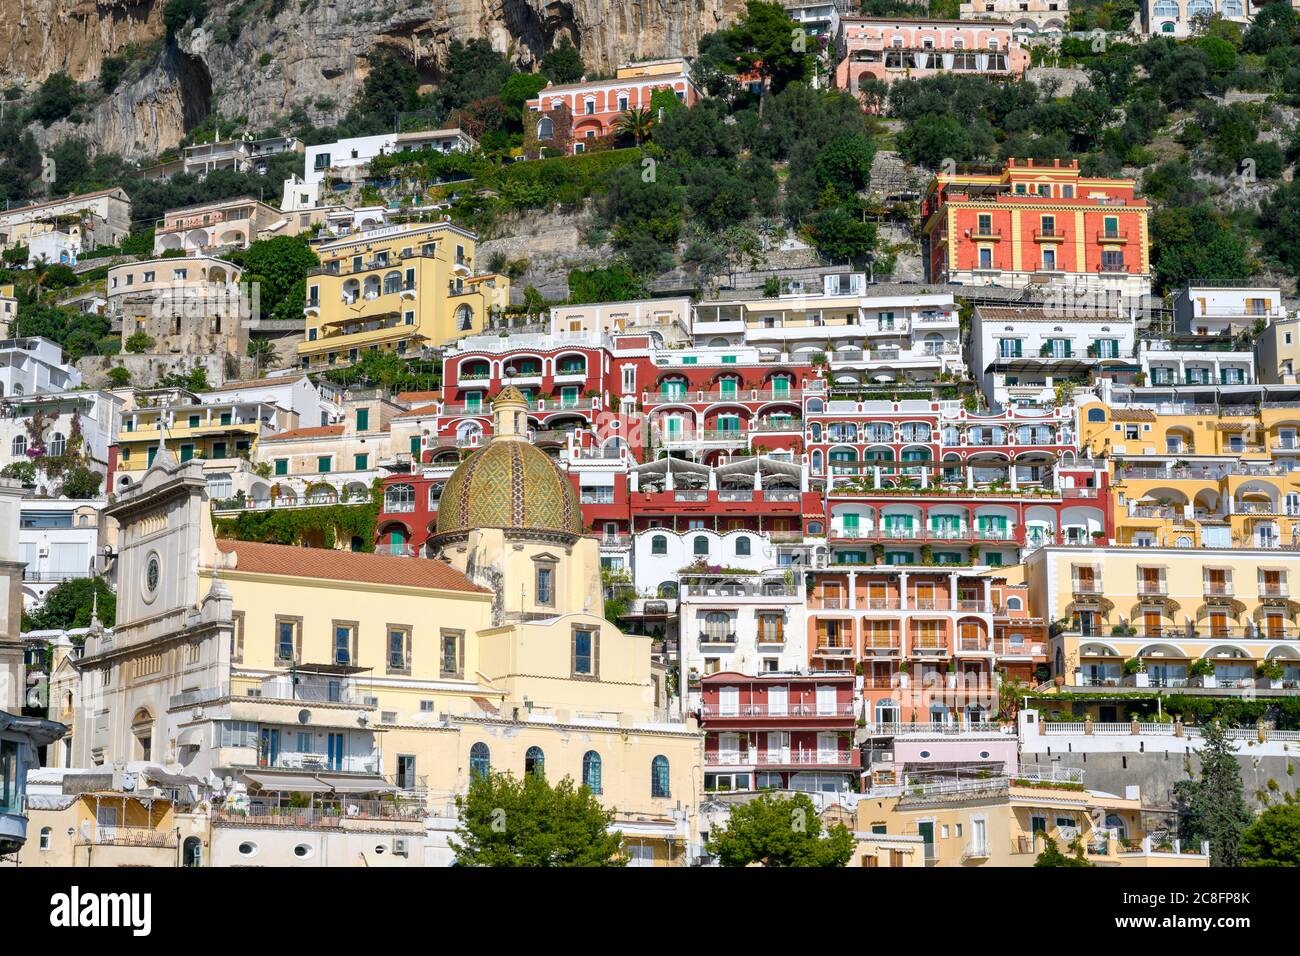 Filas de casas coloridas y otros edificios, dispuestos en terrazas en Positano, sur de Italia Foto de stock